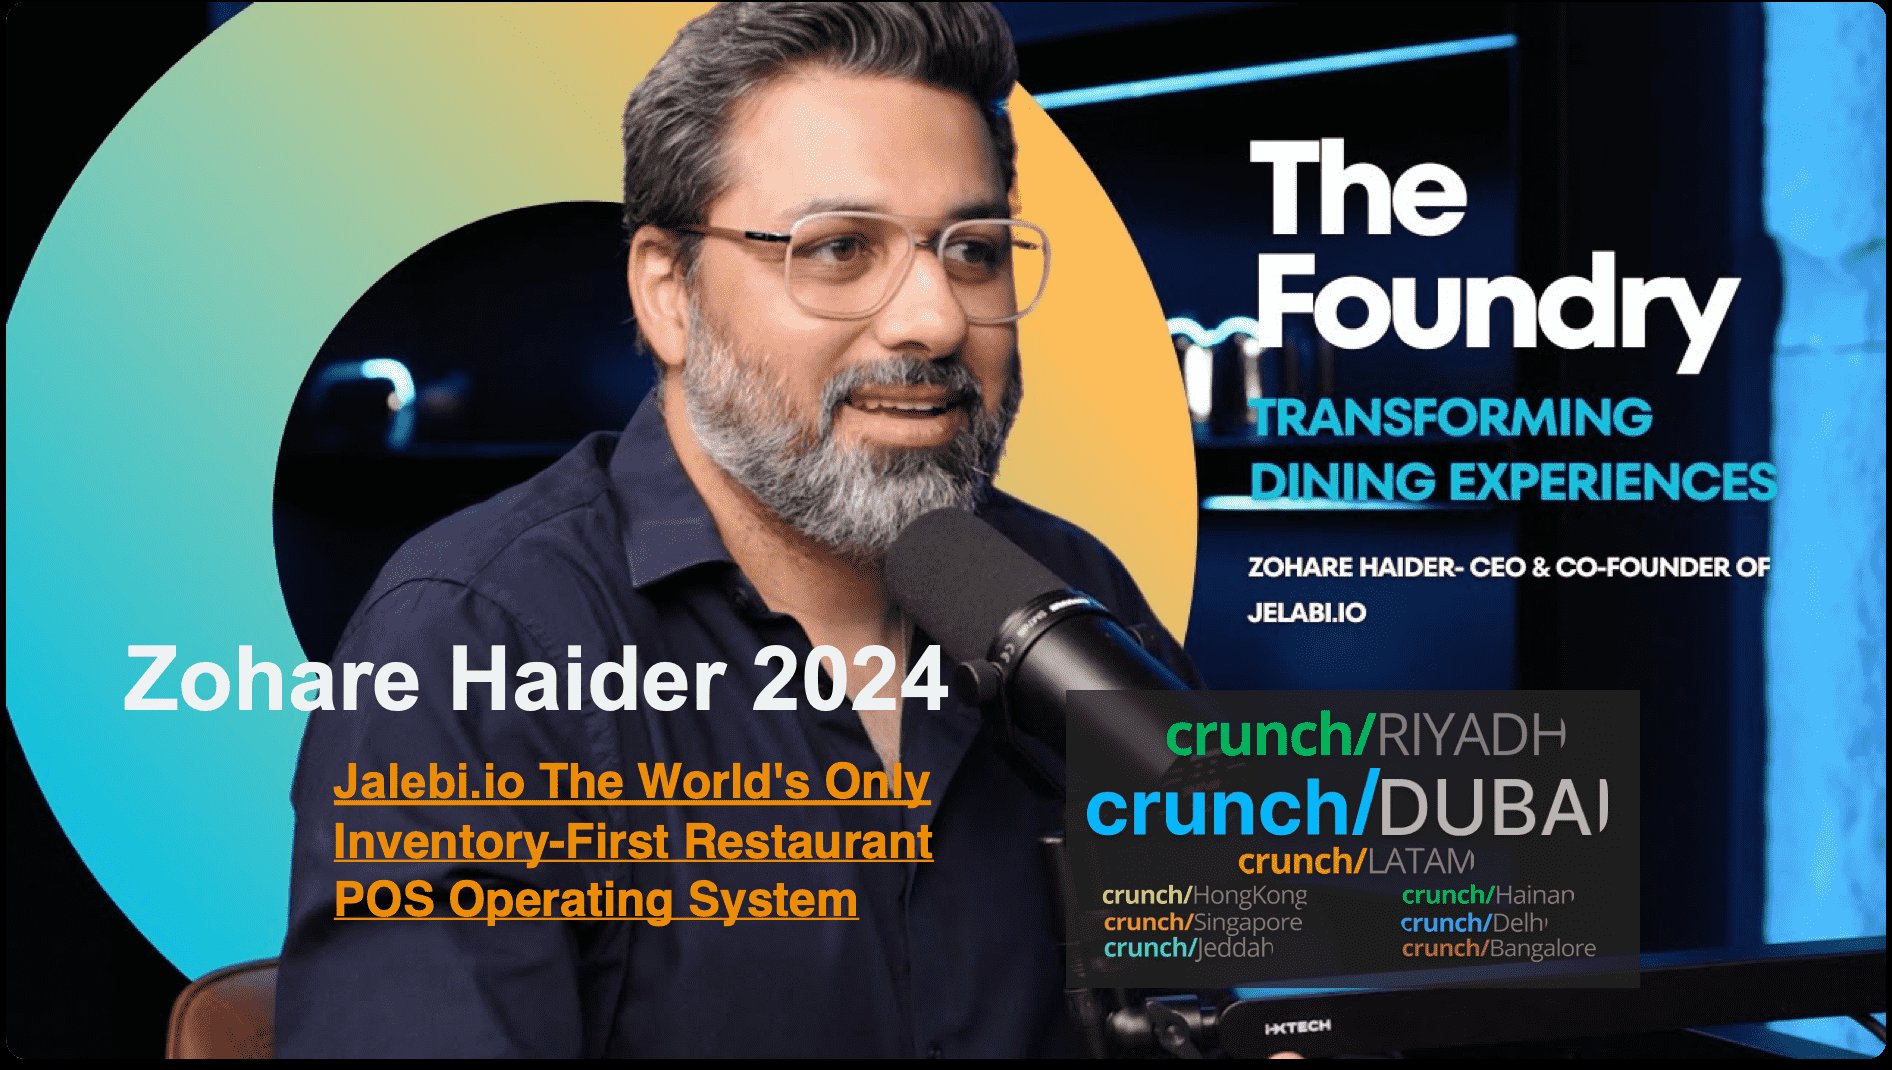 POS restaurateur Zohare Haider 2024 Crunch Dubaï